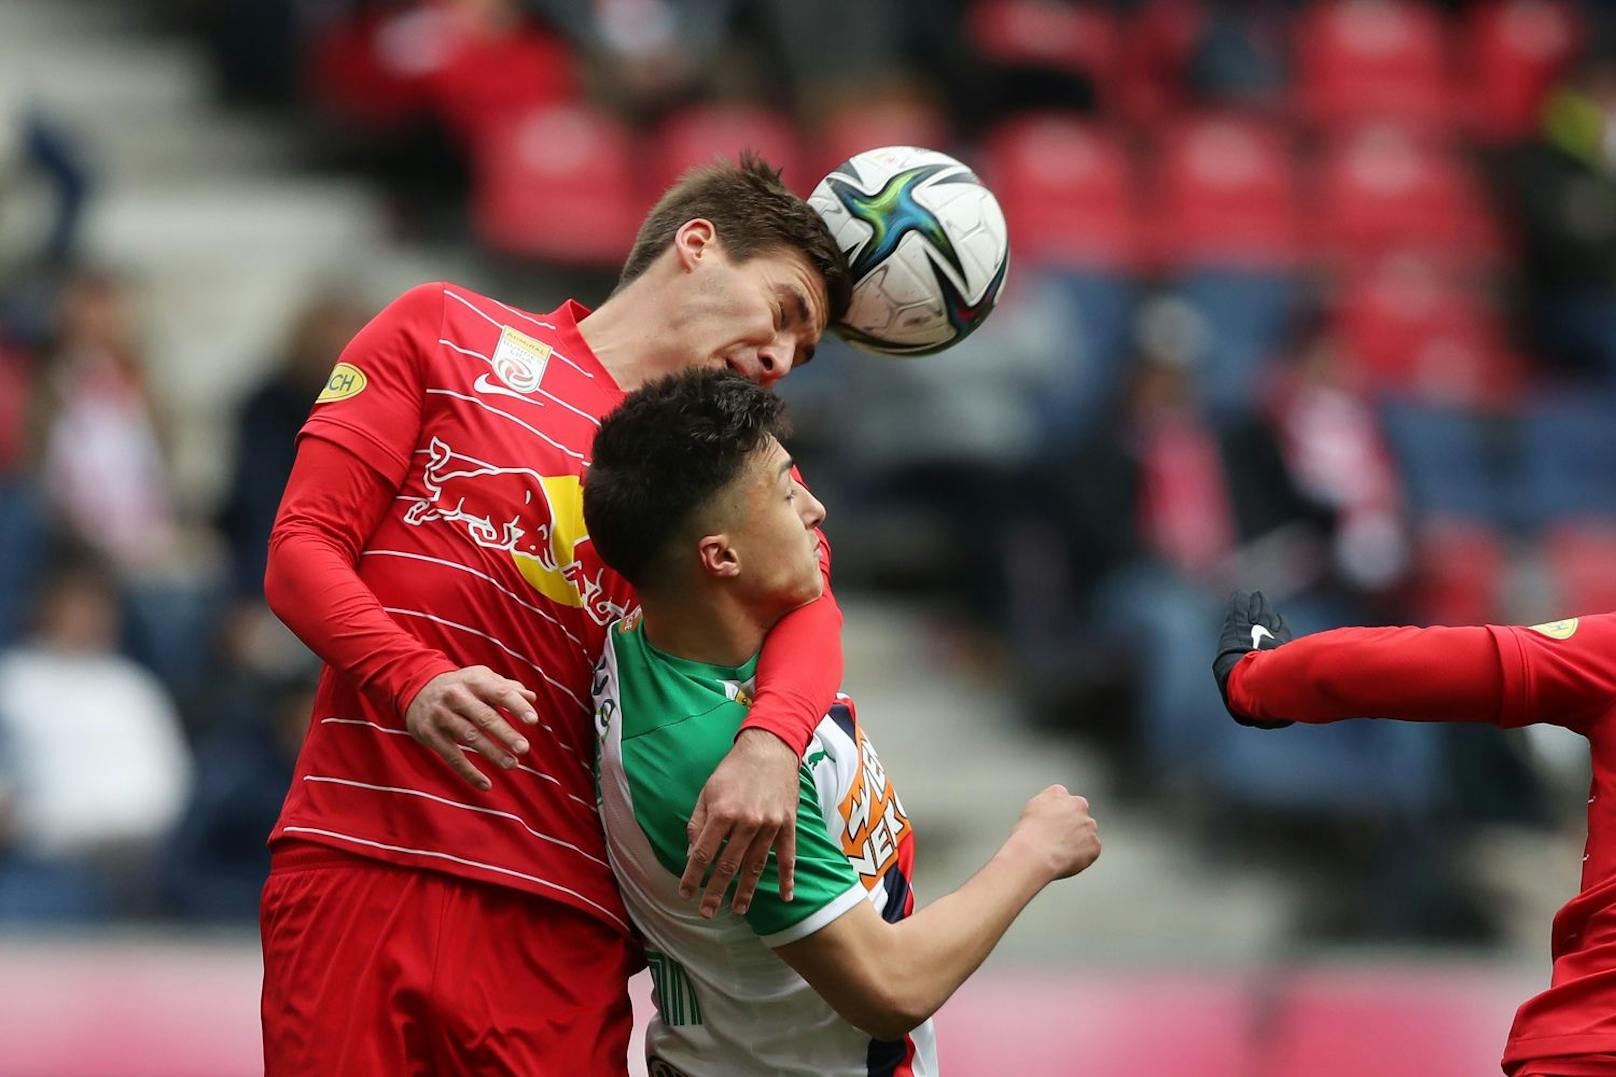 Salzburg schlägt Rapid im Topspiel der 25. Bundesliga-Runde mit 2:1. Die Entscheidung fällt in letzter Sekunde. 